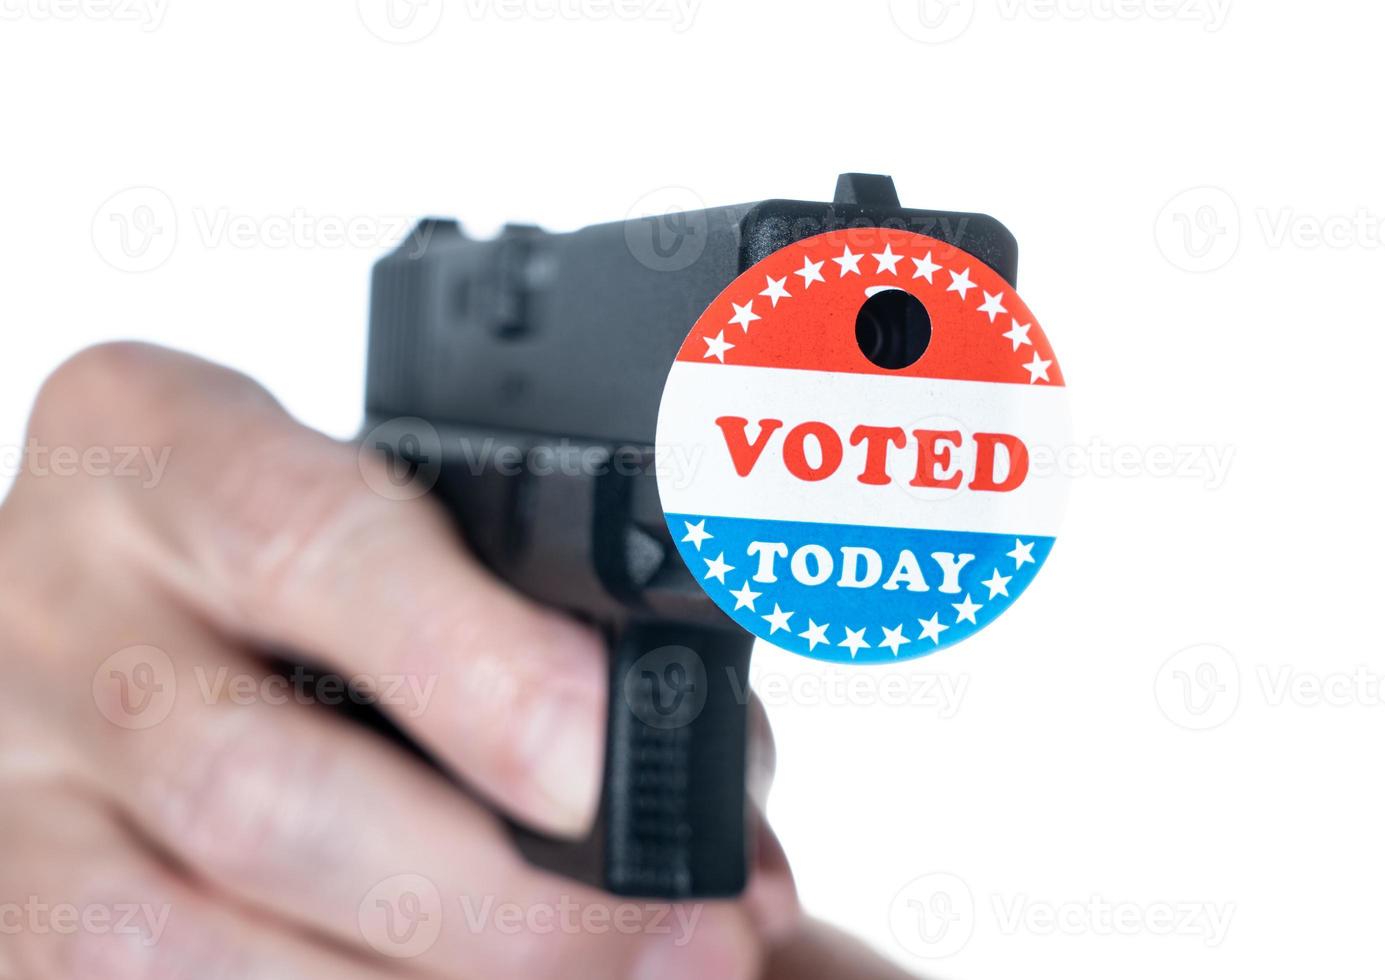 votei hoje no botão da campanha com furo no revólver para supressão de eleitores foto